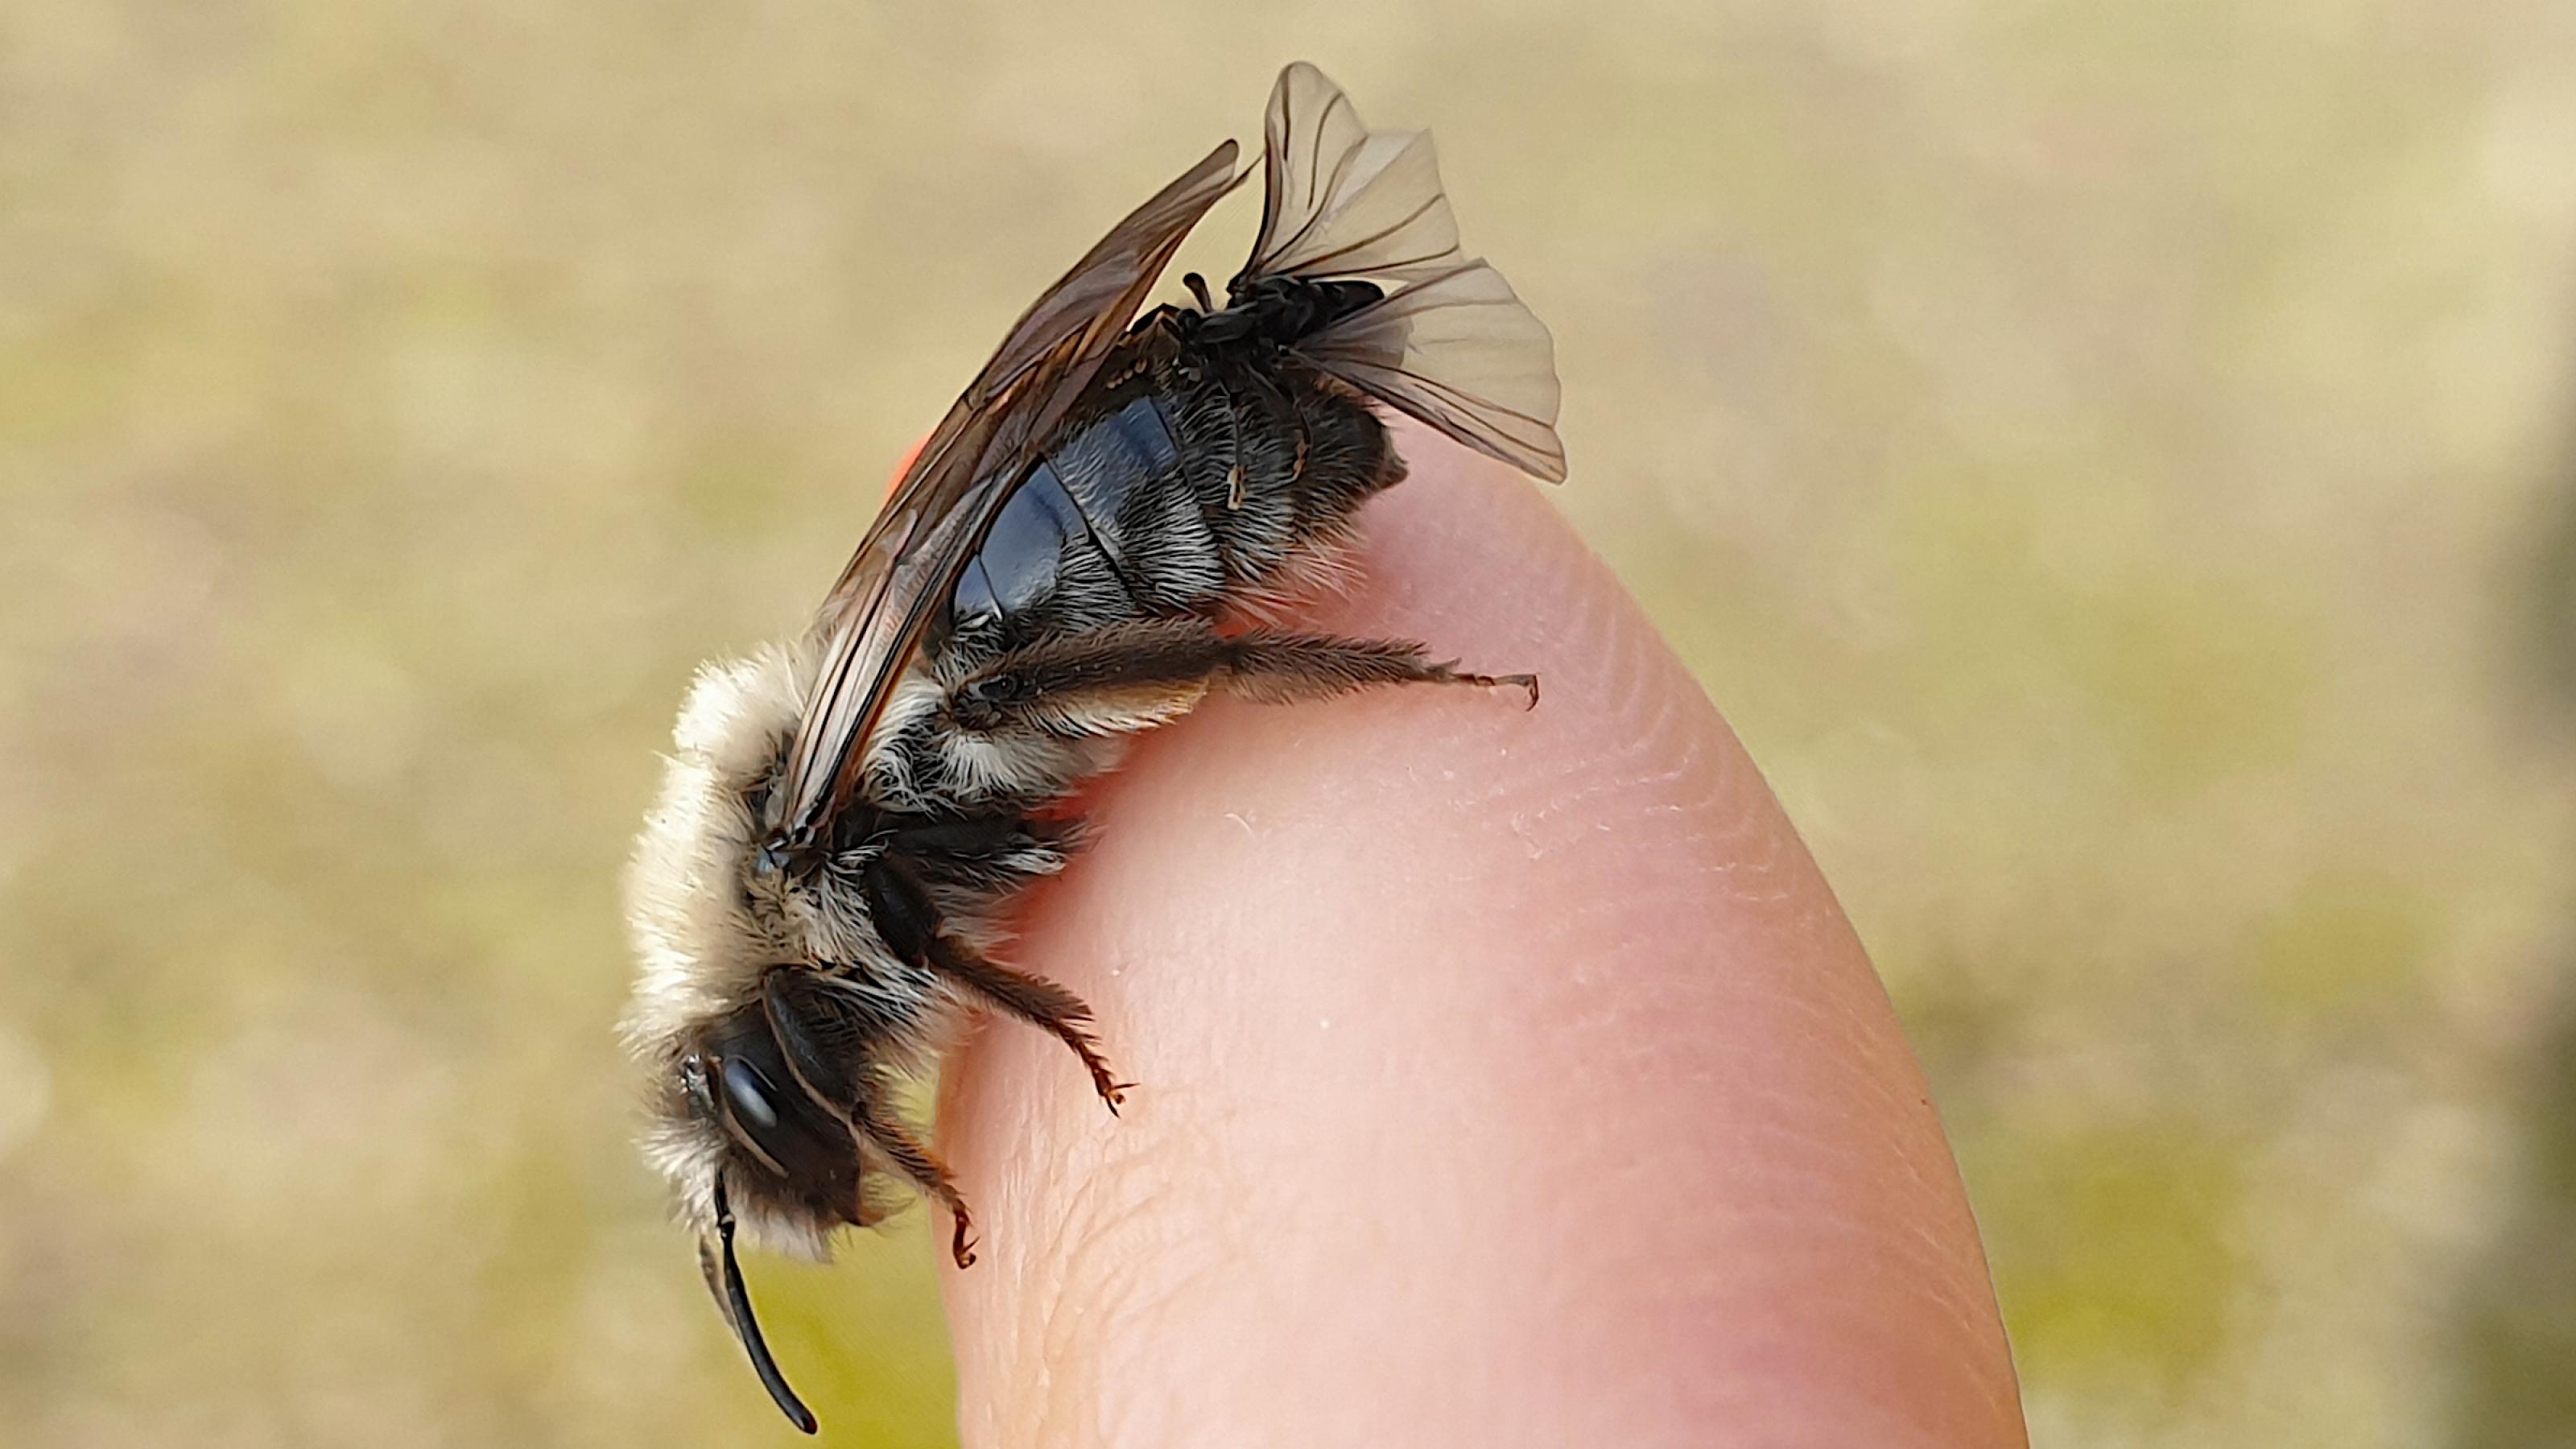 Auf dem Finger einer Person sitzt eine hellbraun-schwarze Biene. An deren Hinterleib sitzt ein Fliegen-artiges, schwarzes Insekt.